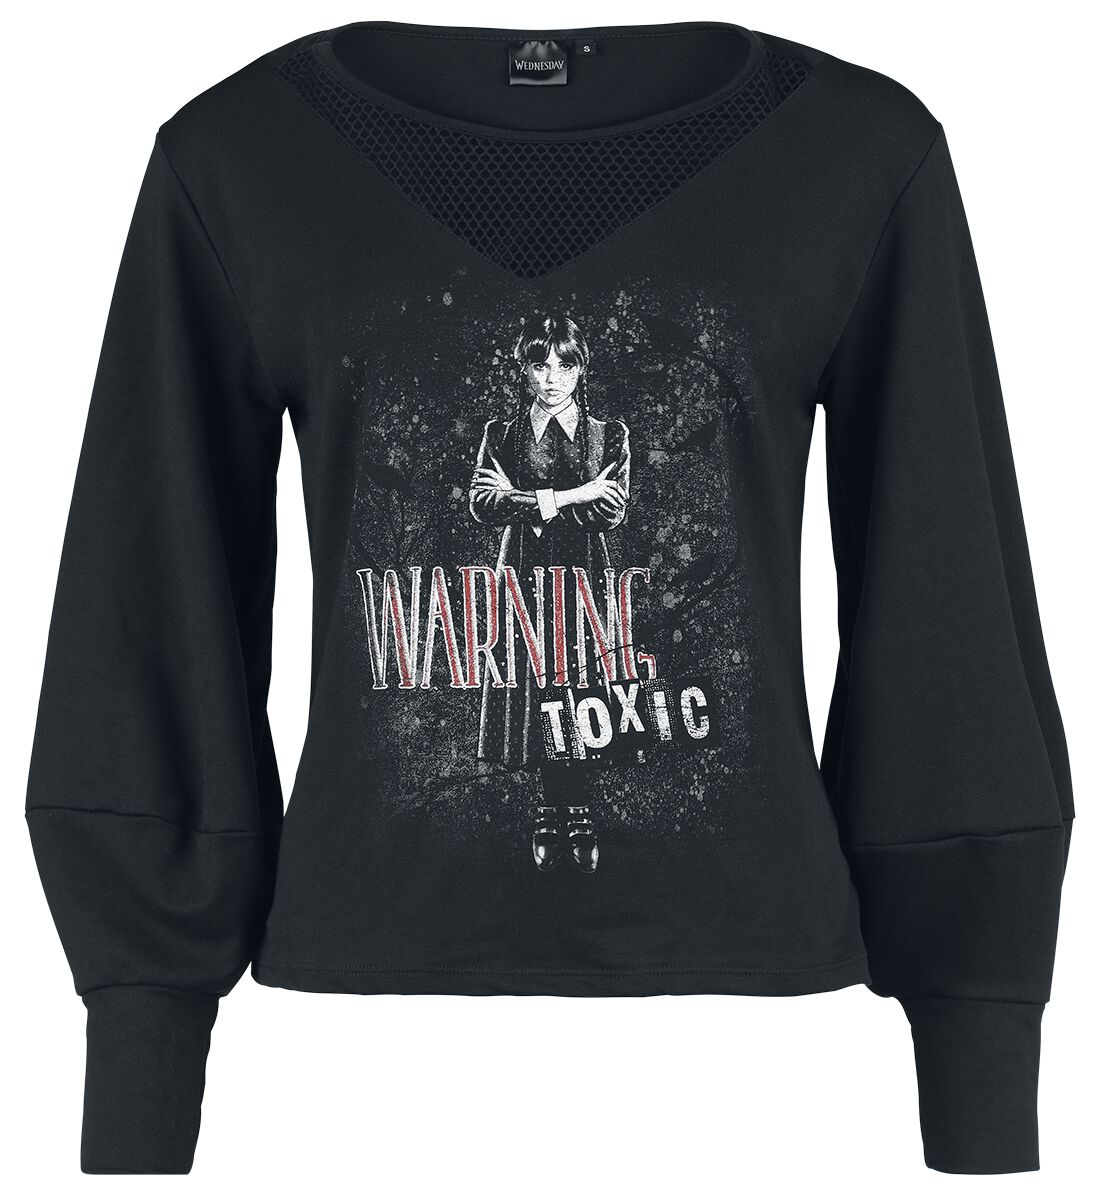 Wednesday Sweatshirt - Warning - Toxic - S bis XXL - für Damen - Größe XXL - schwarz  - EMP exklusives Merchandise!